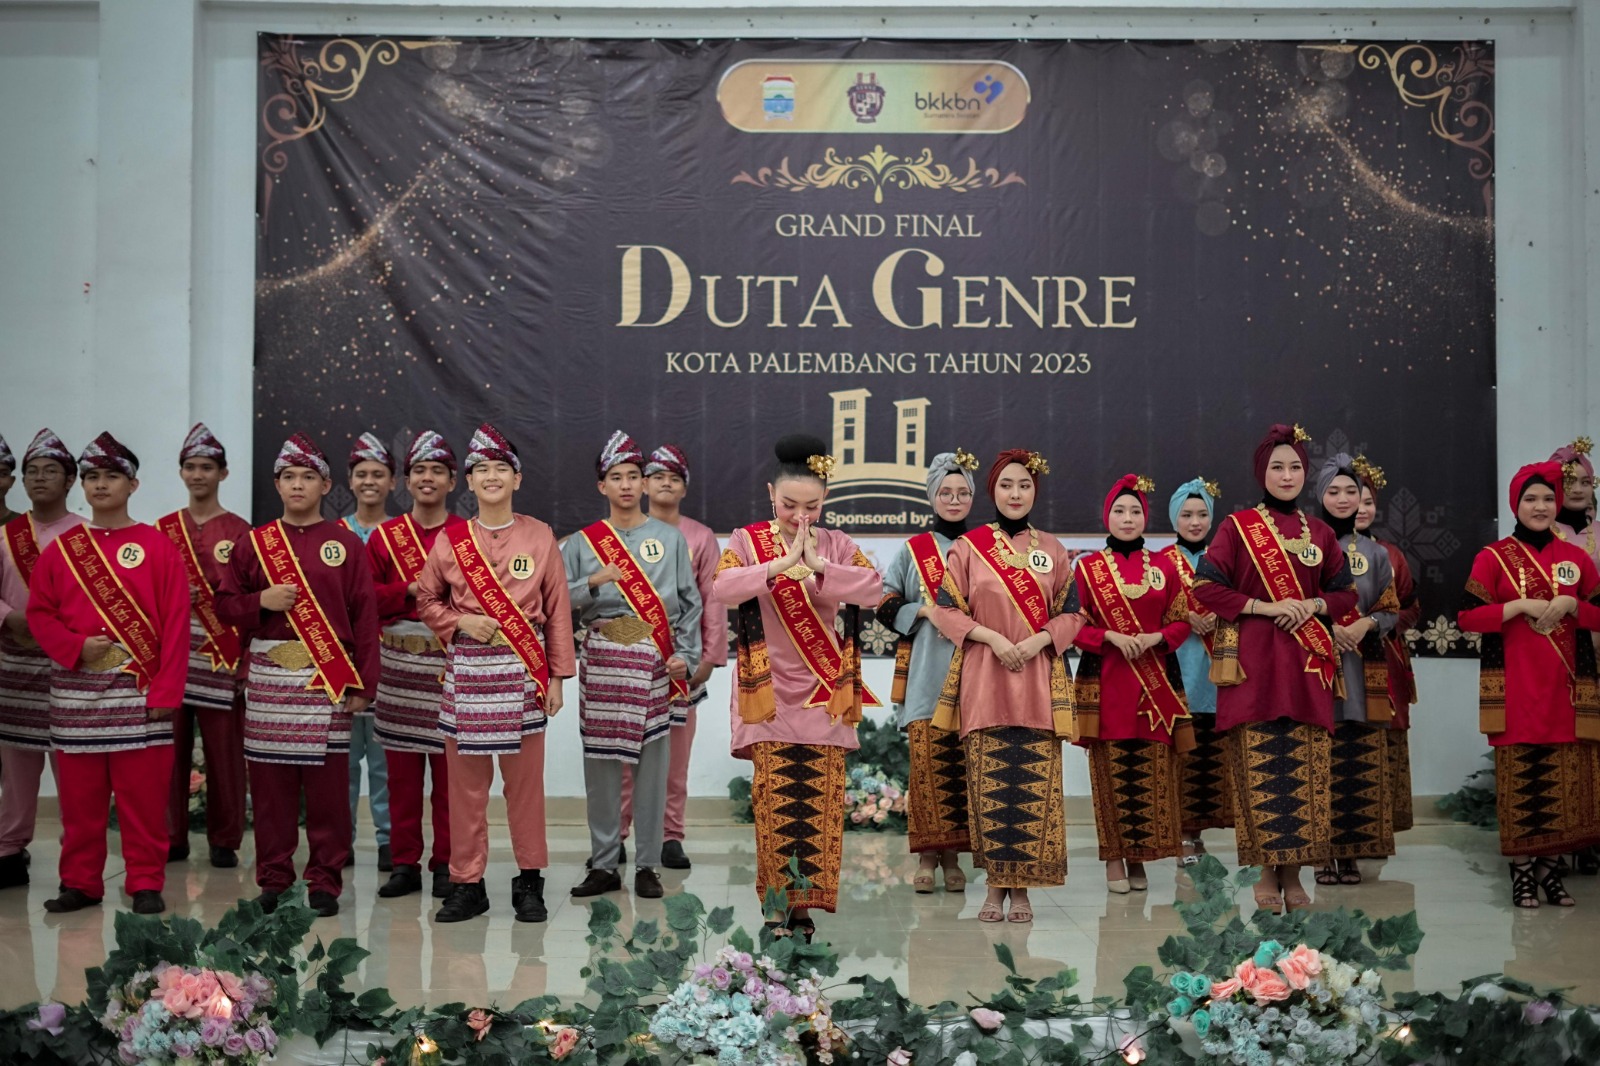 Hebat! Mahasiswa UBD Miftahul Huda Raih Wakil I Duta Genre Putri Kota Palembang 2023